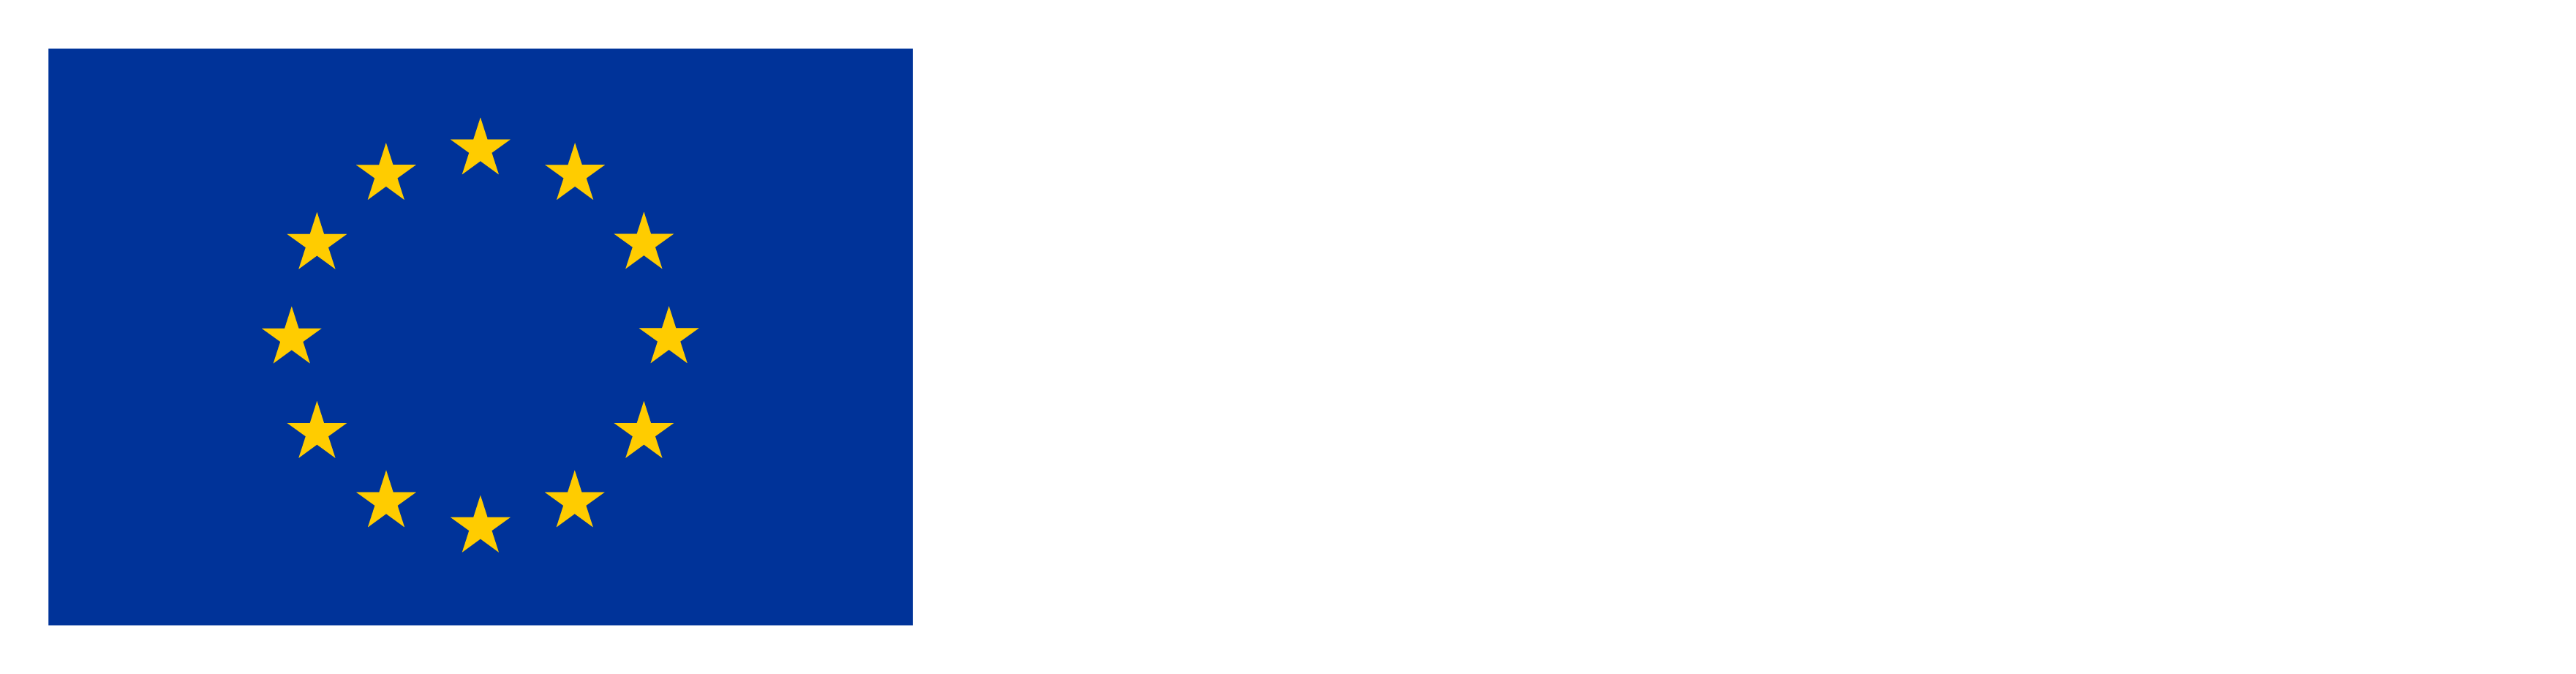 Abre en nueva ventana - Financiado por la Unión Europea - Next Generation EU